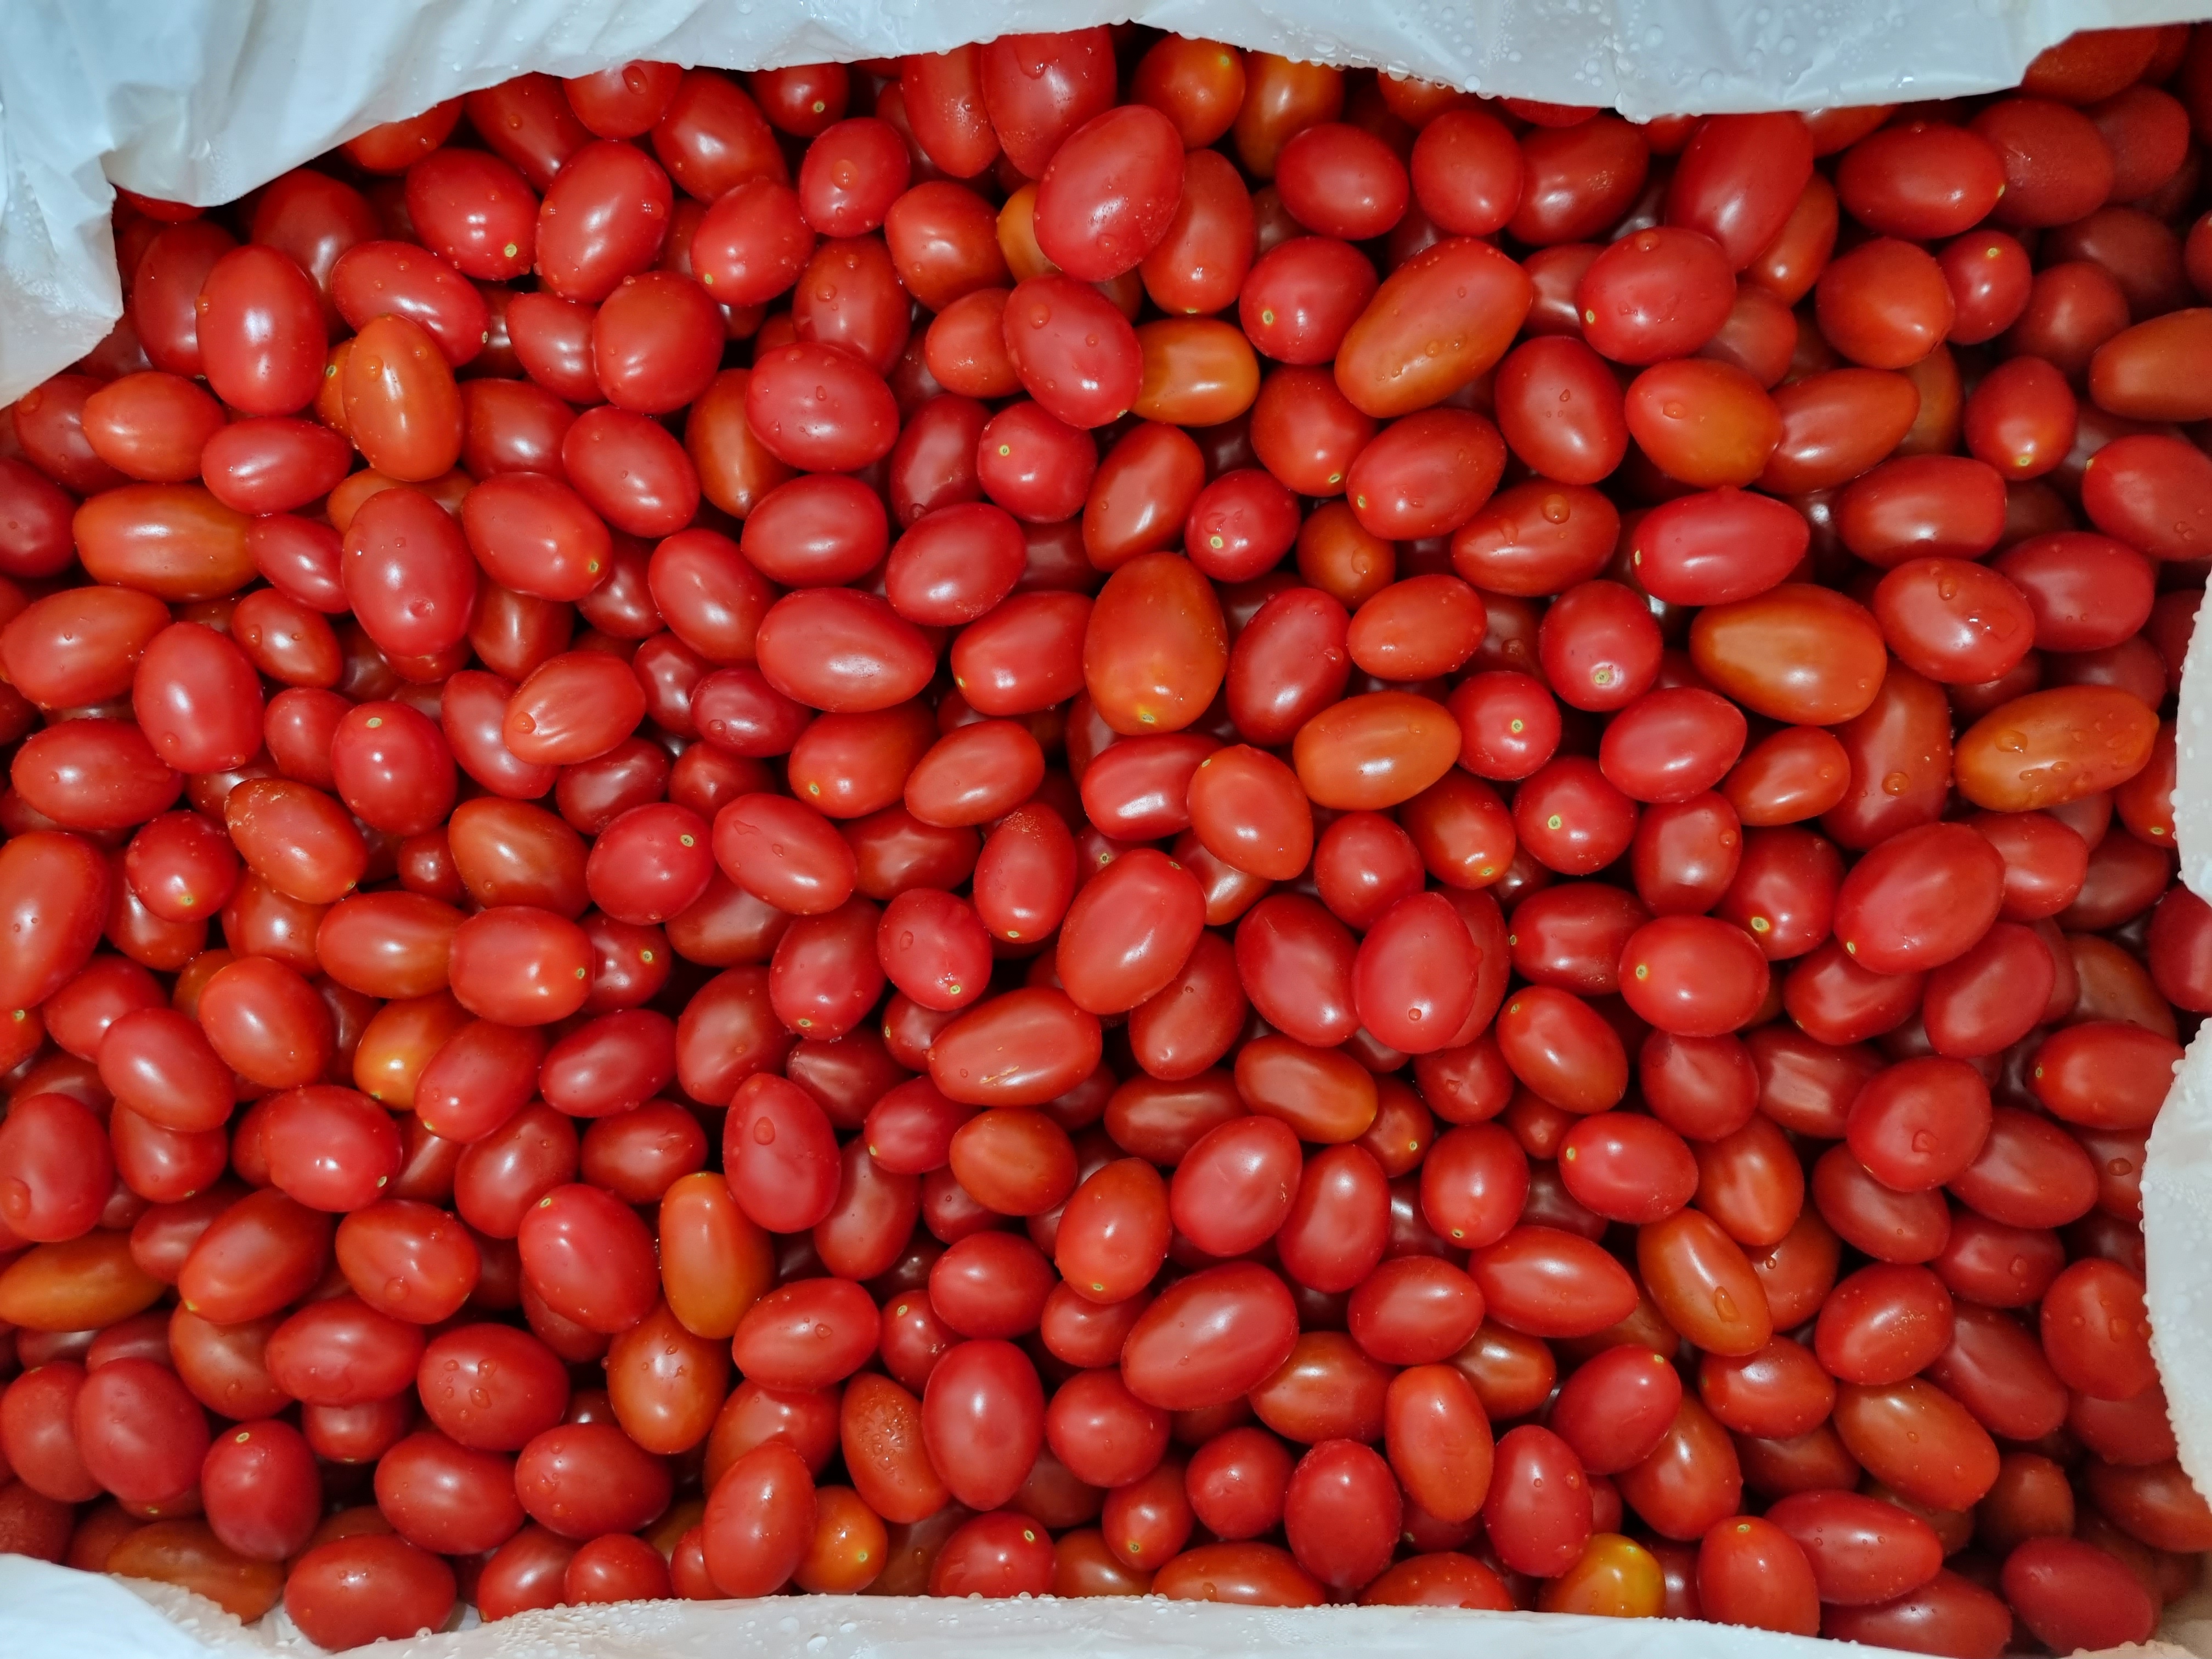 한국지역난방공사에서 건표고버섯 10kg, 방울토마토 220kg를 후원해주셨습니다!